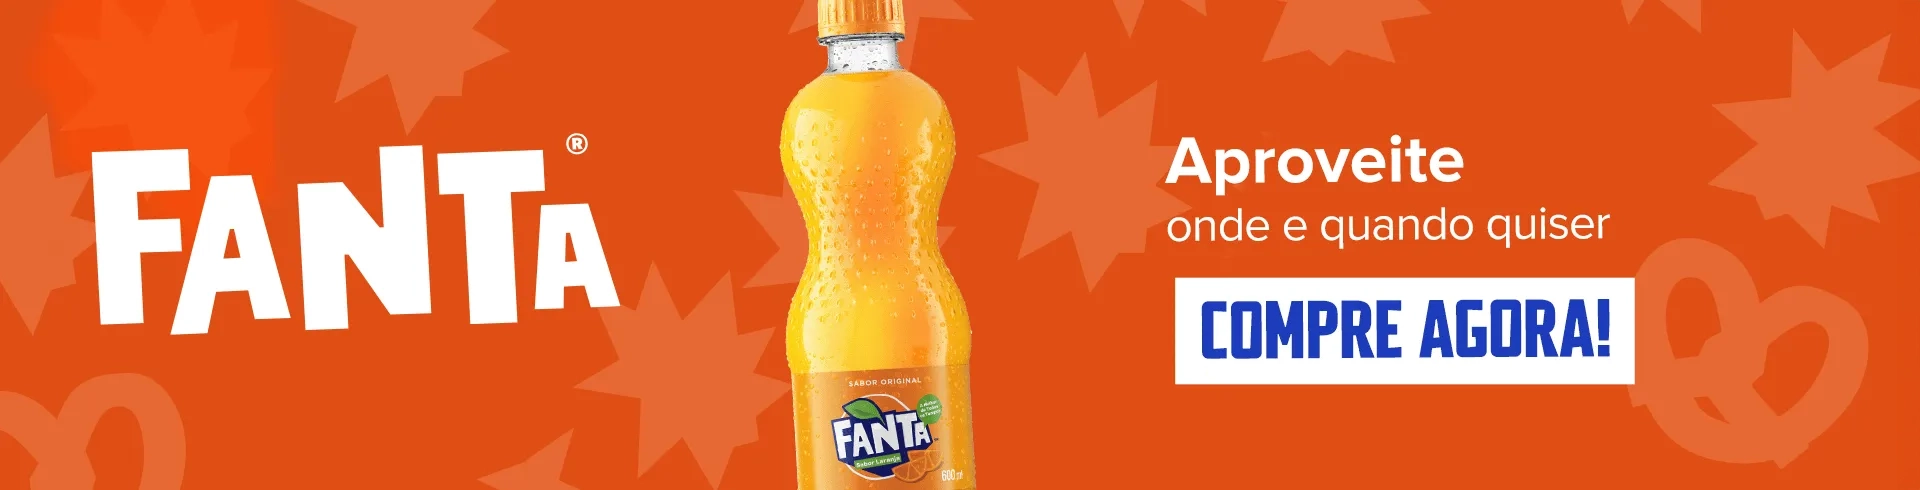 Uma garrafa de Fanta com um fundo laranja vibrante e um texto convidando os usuários a comprar Fanta no comércio eletrônico Na Sua Casa, dizendo: "Aproveite onde e quando quiser. Compre agora!